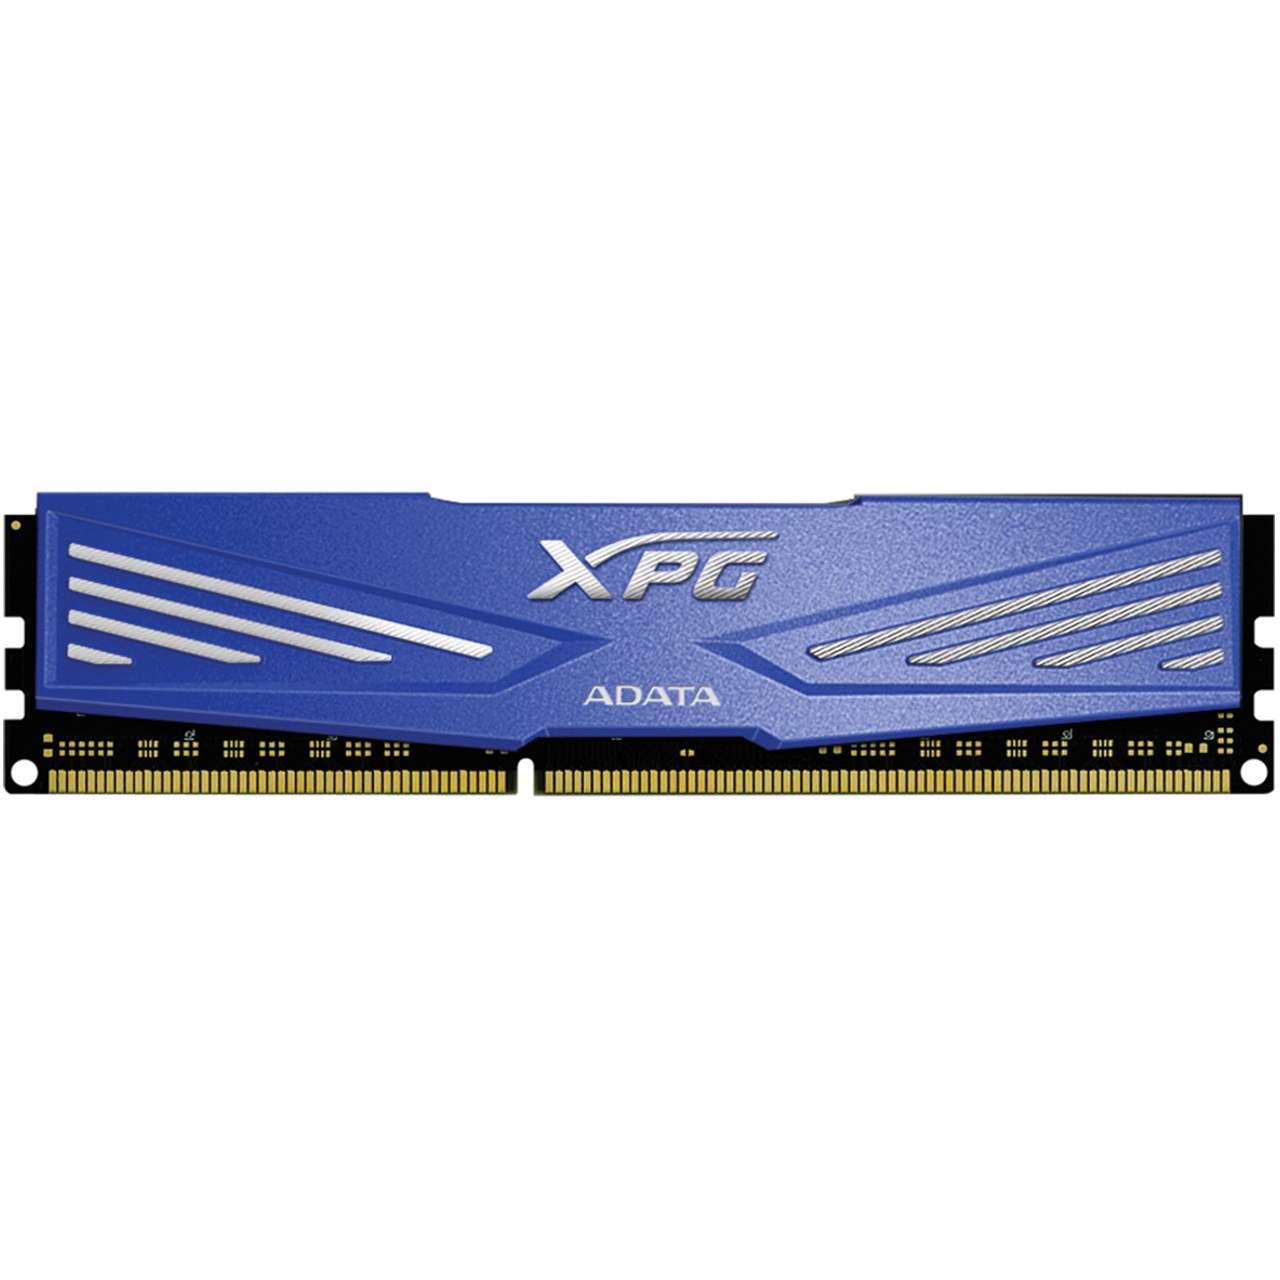 رم دسکتاپ DDR3 تک کاناله 1600 مگاهرتز CL11 ای دیتا مدل XPG V1 ظرفیت 8 گیگابایت